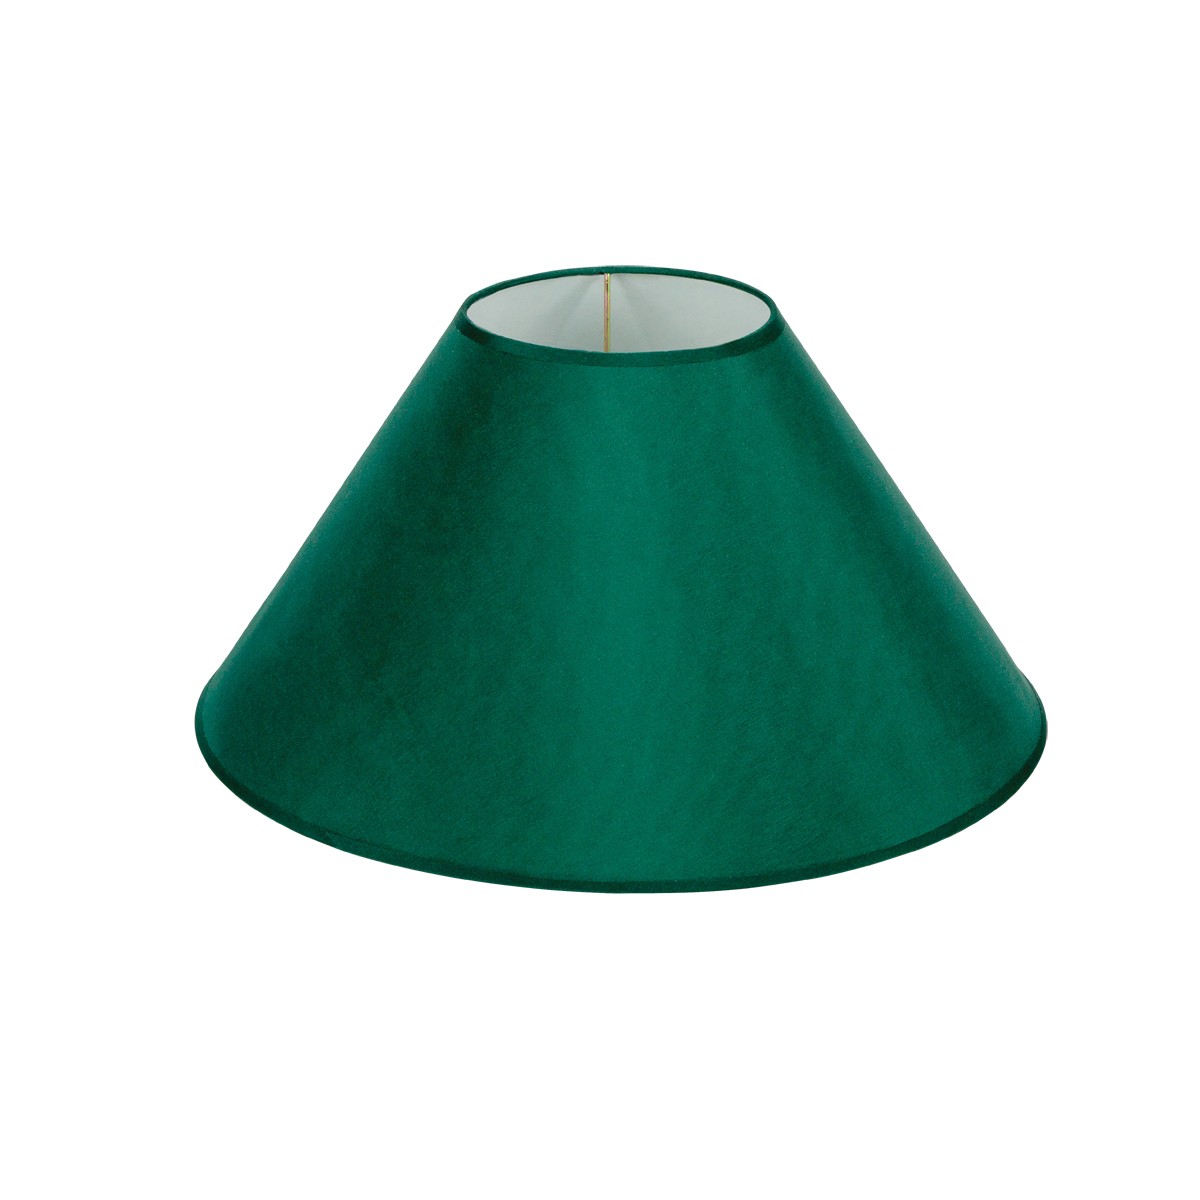 Καπέλο Μονόχρωμο Στρογγυλό Φ40cm Κάτω Πλευρά- Σε Πράσινο Χρώμα        VK/E27/E14/D40/GR